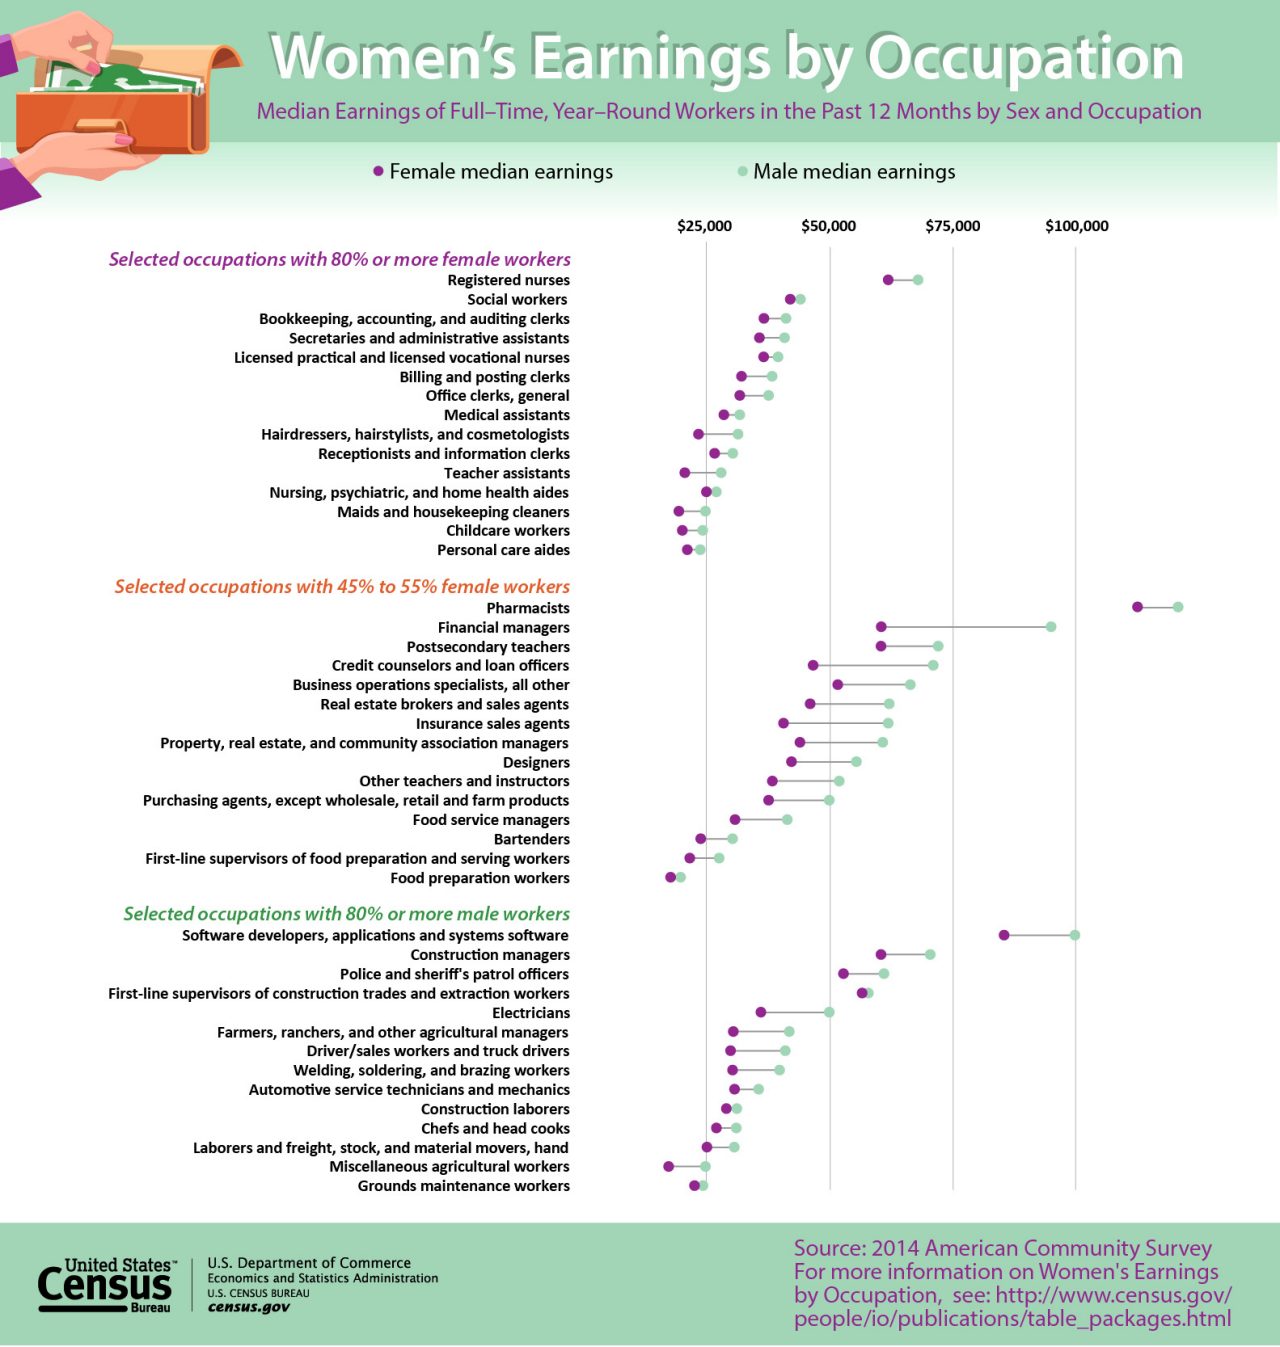 Women's Earnings by Occupation